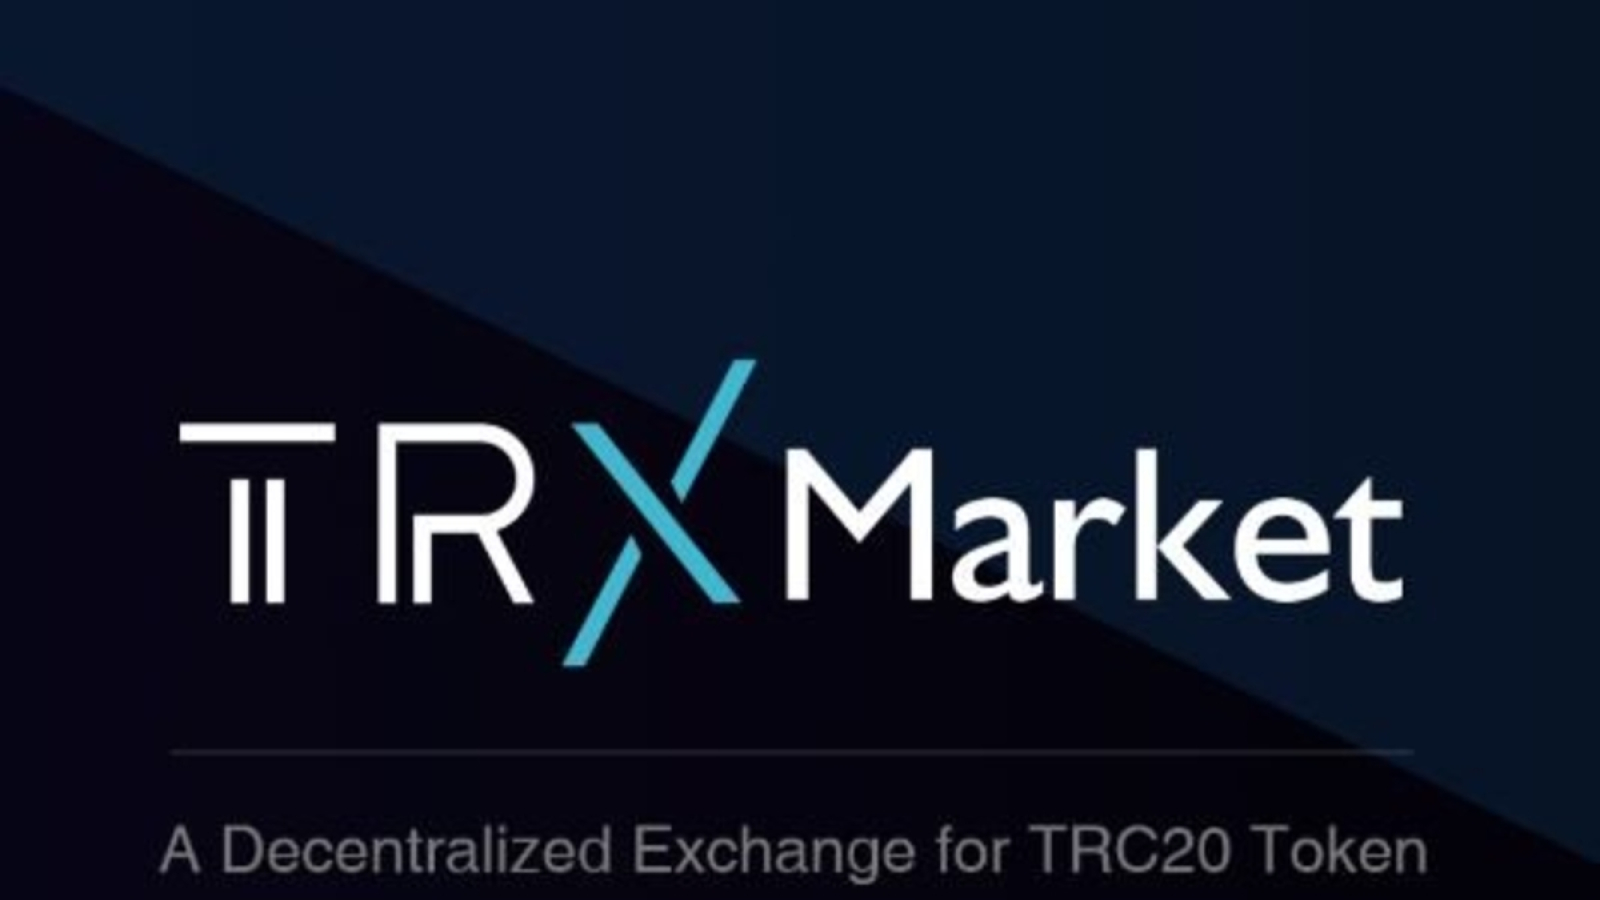 TRX Market logo